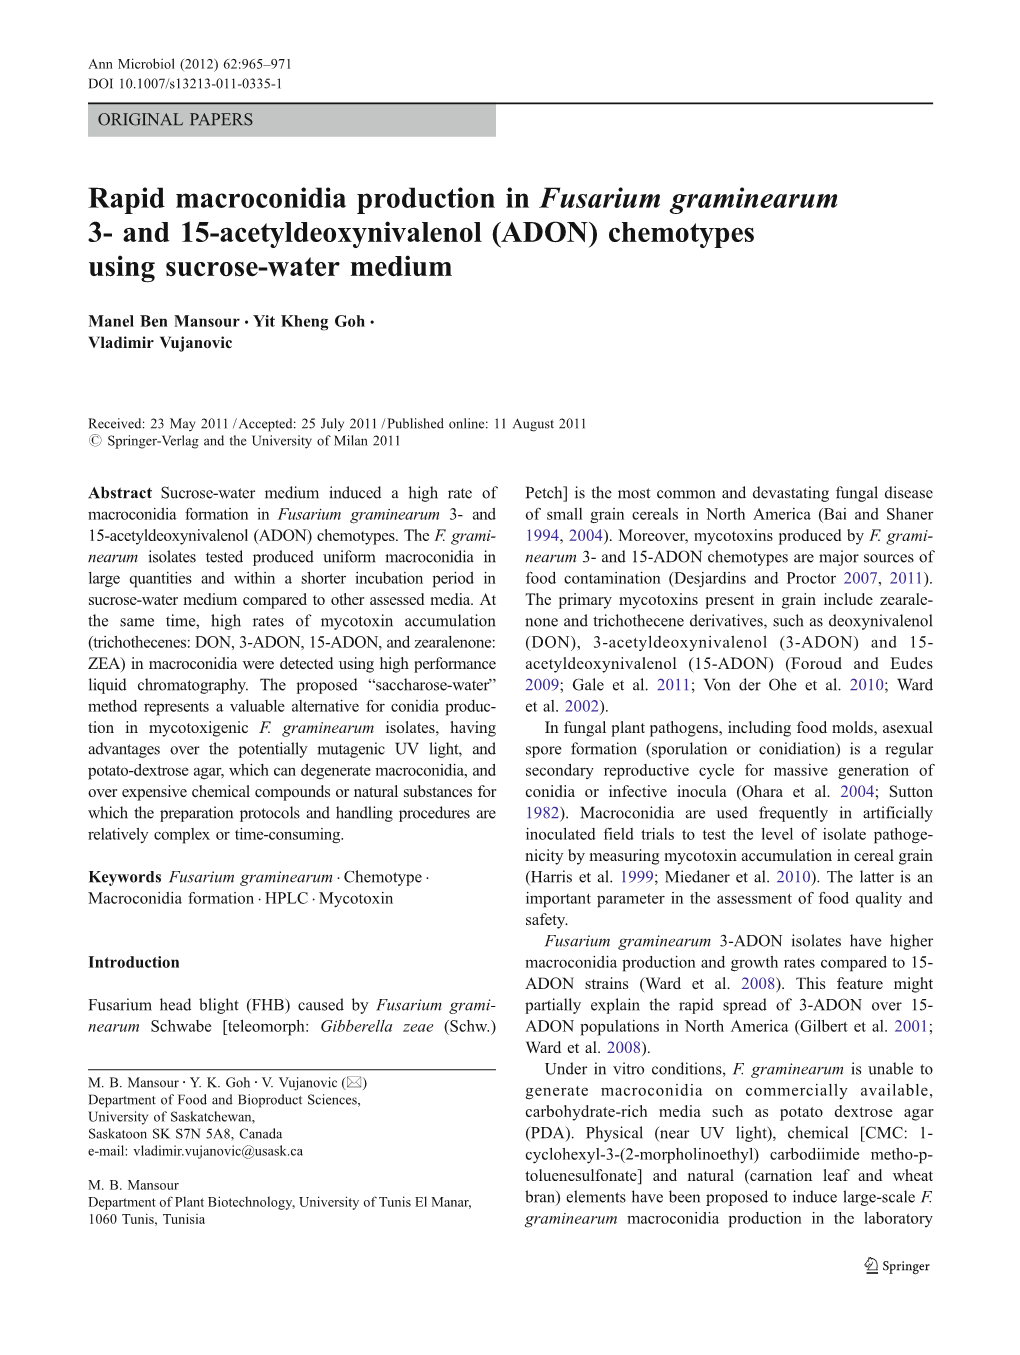 Rapid Macroconidia Production in Fusarium Graminearum 3- and 15-Acetyldeoxynivalenol (ADON) Chemotypes Using Sucrose-Water Medium